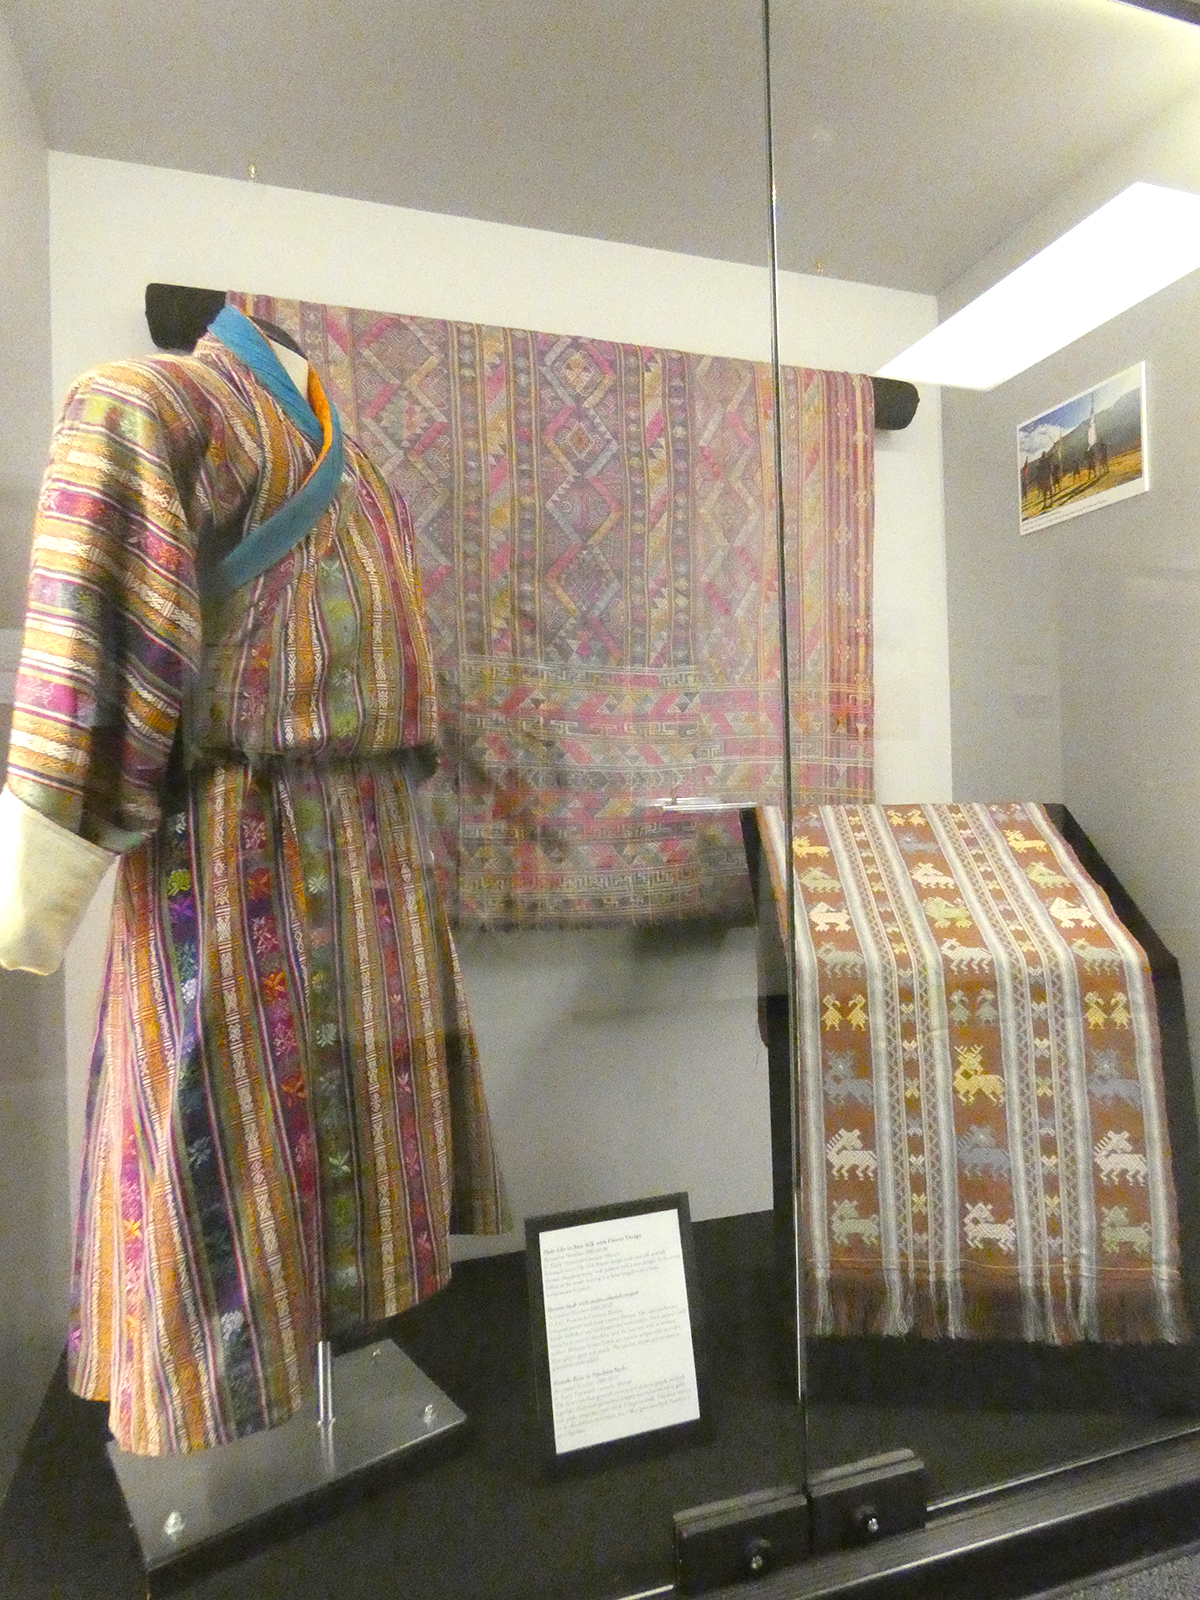 Exhibition Case: Bhutan: A Culture Woven through Textiles